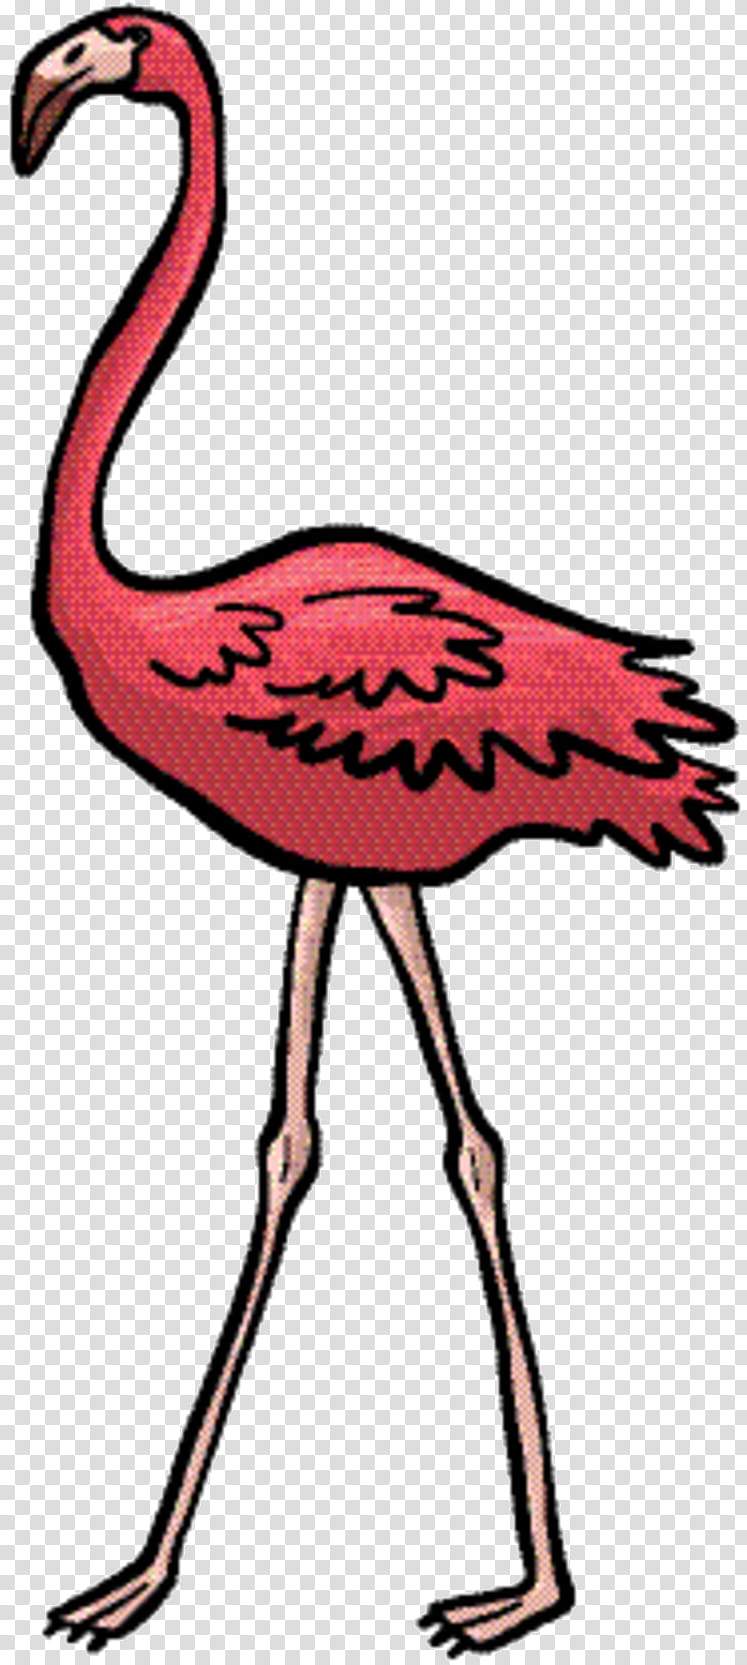 Pink Flamingo, Art, Fauna, Pink M, Neck, Beak, Greater Flamingo, Bird transparent background PNG clipart